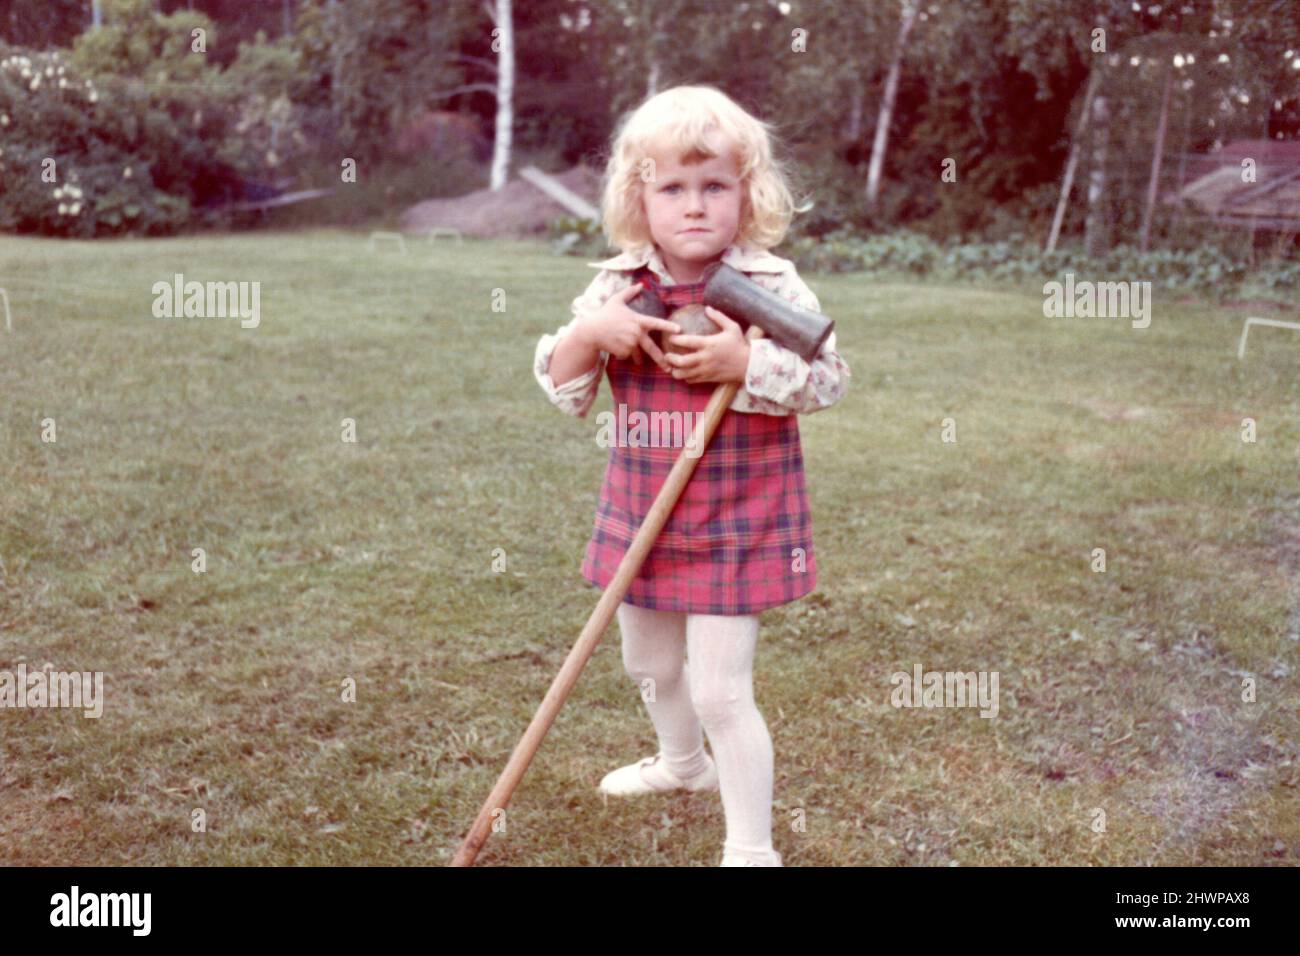 Original-Farbfoto der 1970er Jahre von einem kleinen blonden Mädchen, das Krocketschläger und Kugeln hält, Schweden. Stockfoto